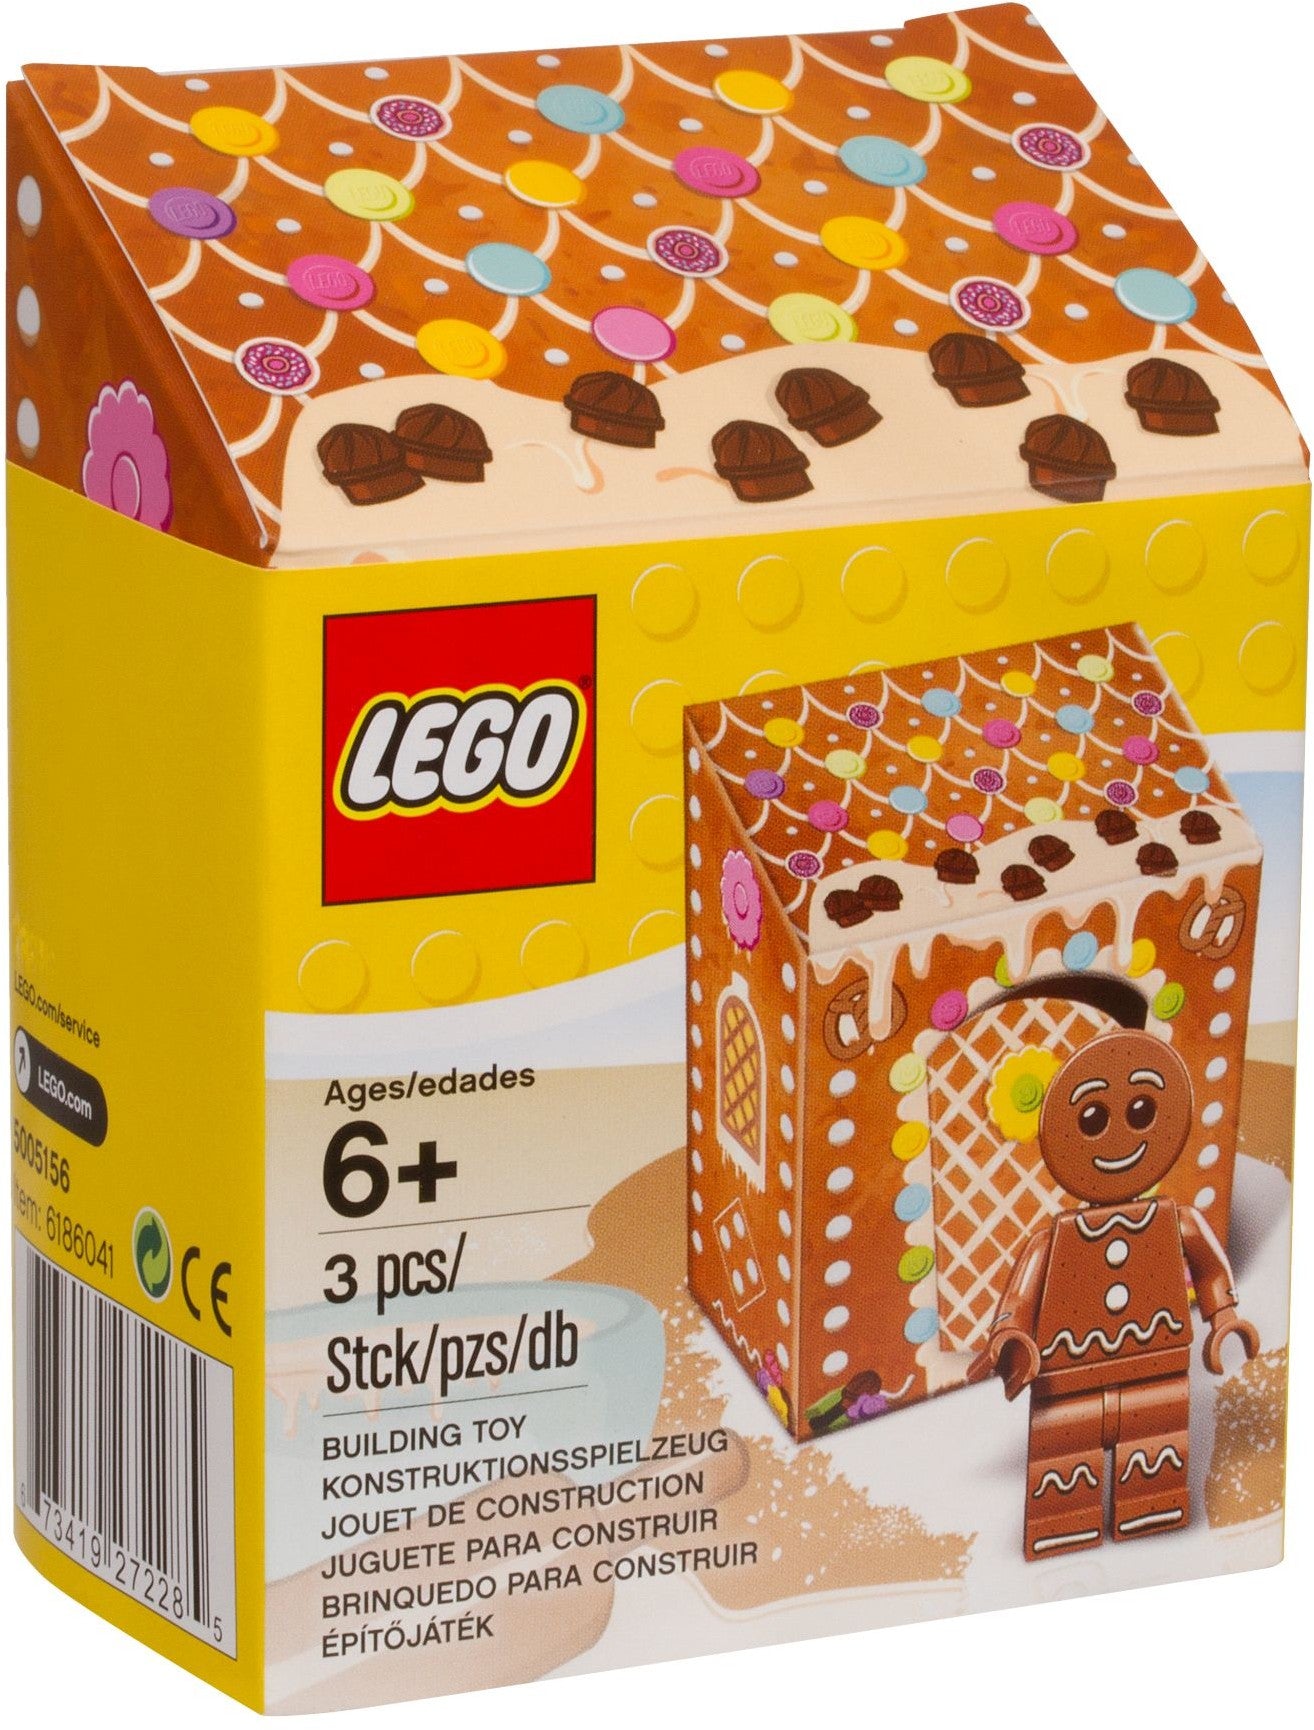 Lego 5005156 - Gingerbread Man